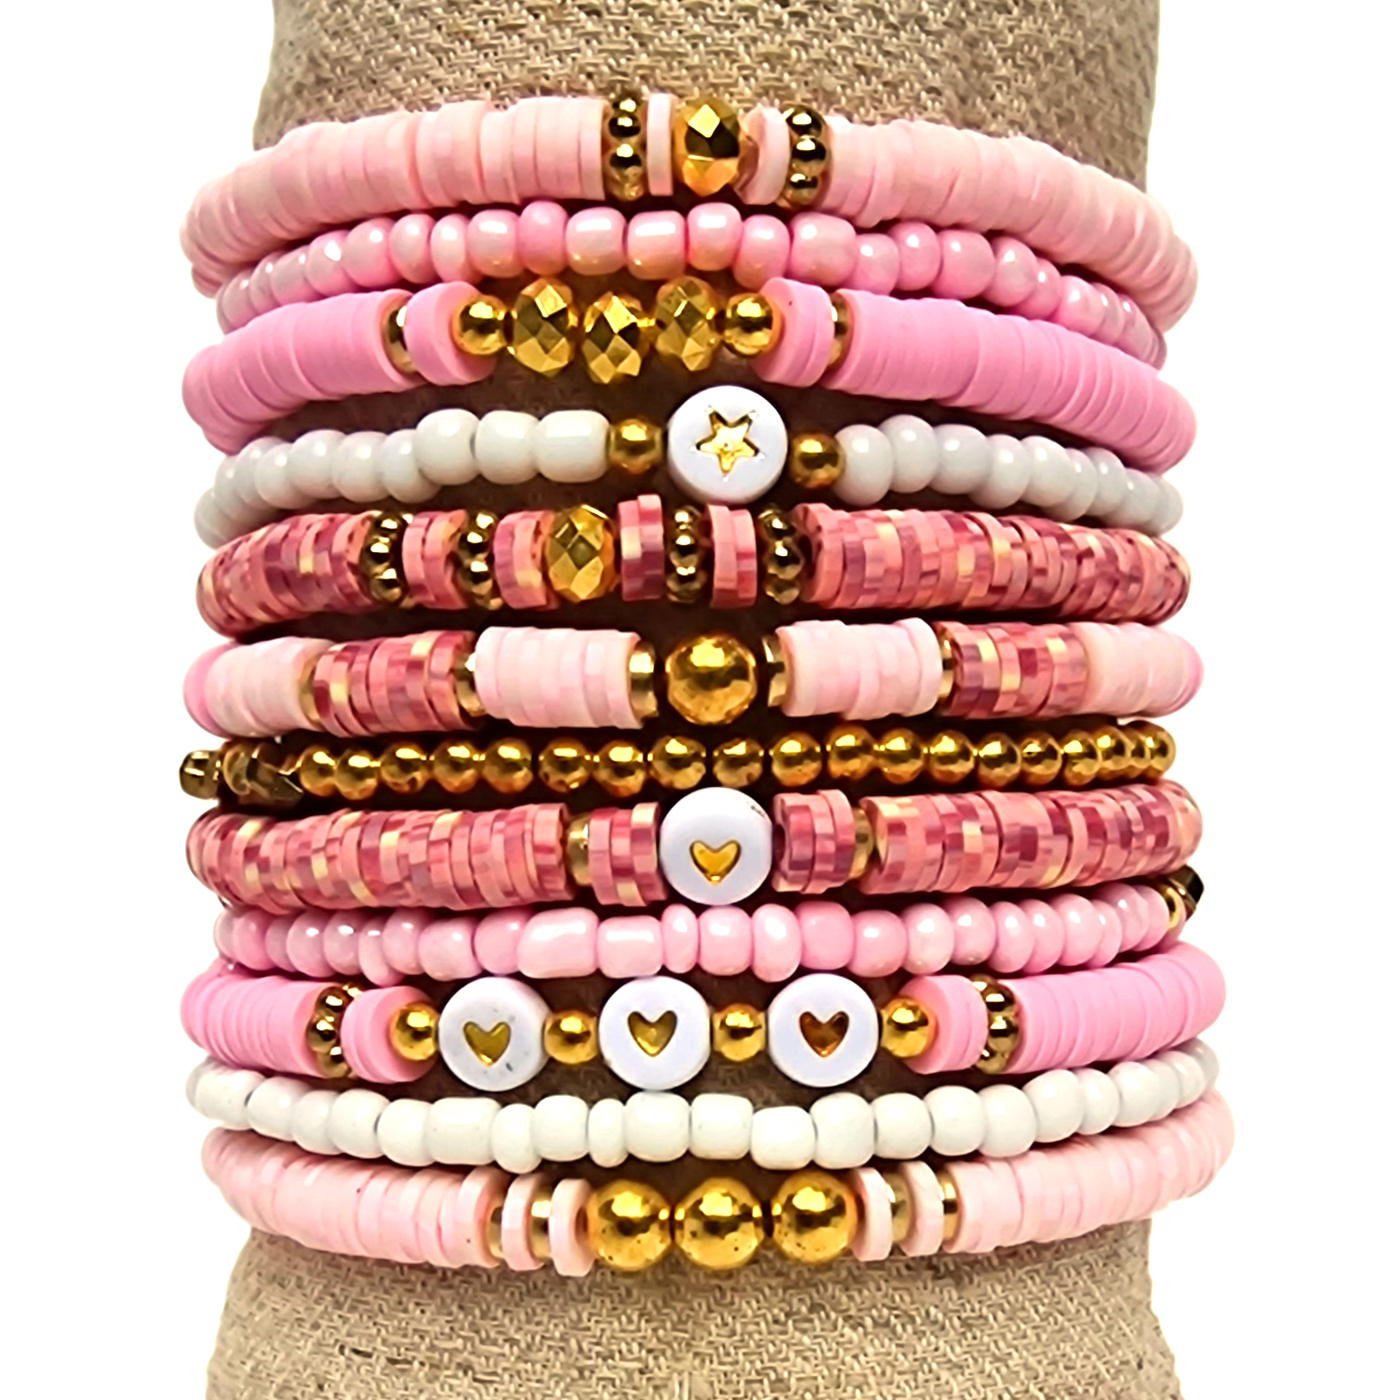 Principessa Katsuki kralenpakket voor armbanden met spacers – Roze, Vintage en lichtroze casinomixen – 4 mm Rocailles Roze en wit – Gouden kraaltjes